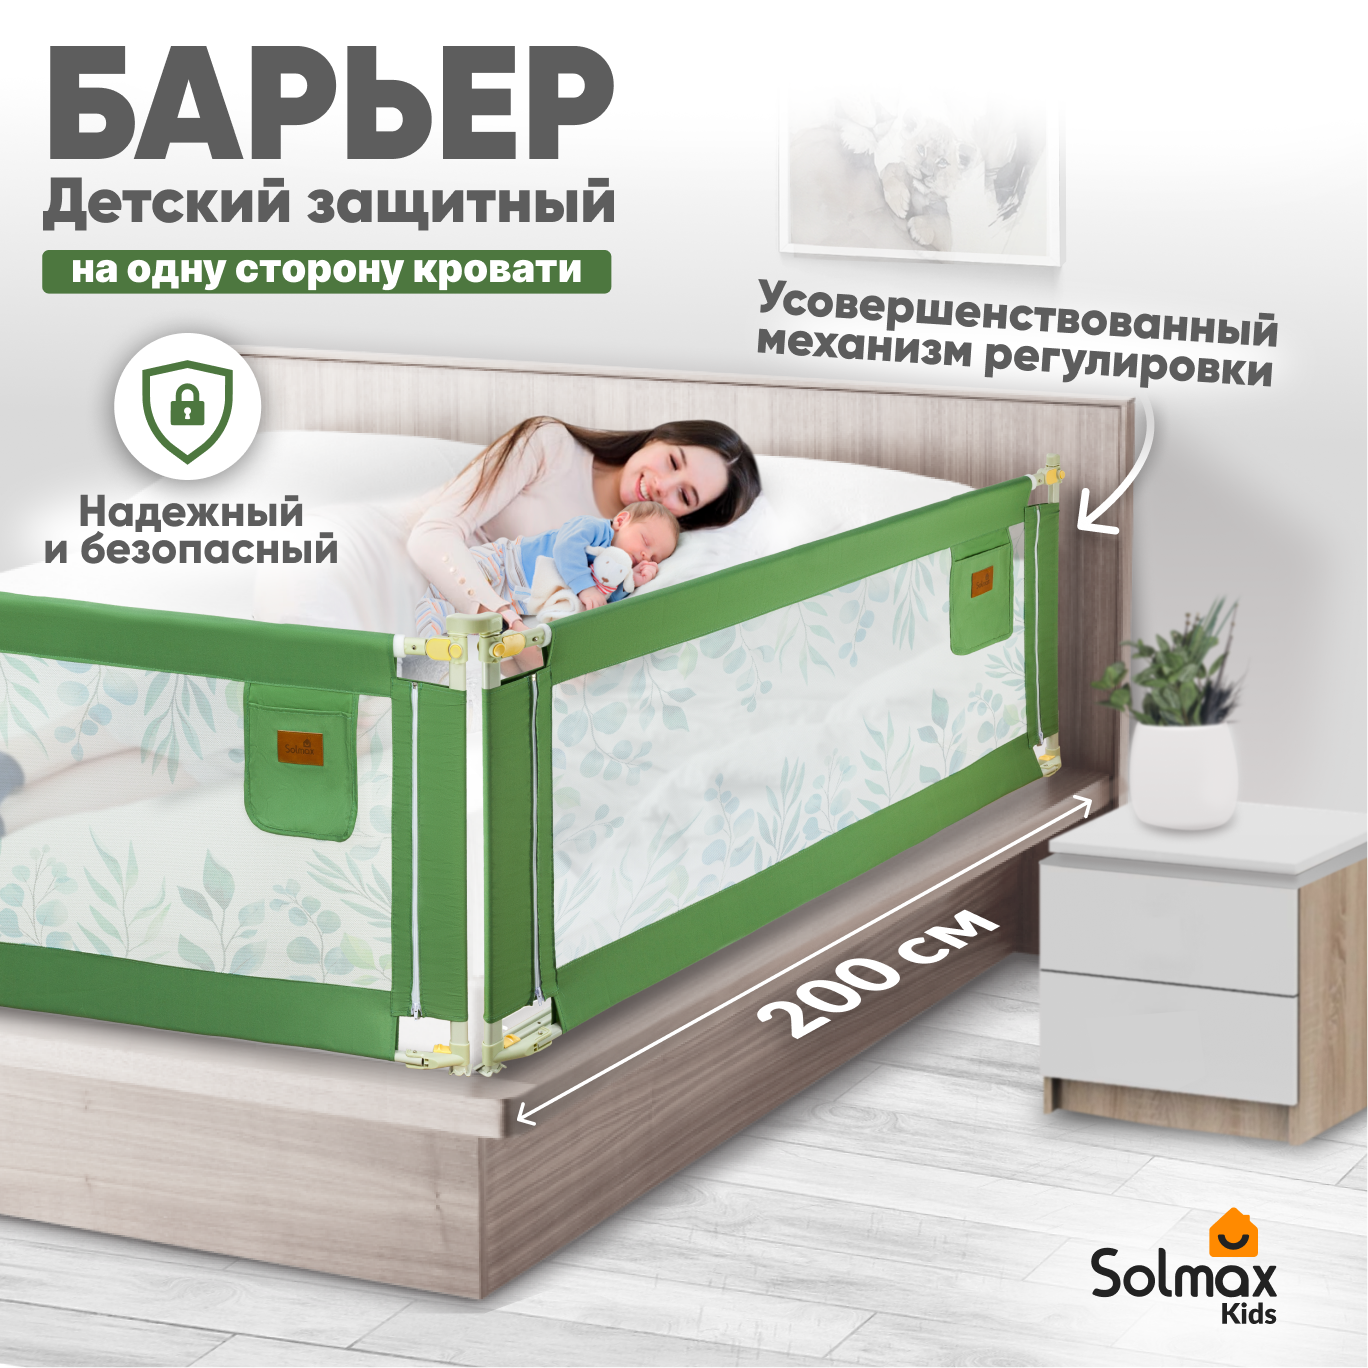 Барьер защитный для кровати от падений SOLMAX зеленый бортик в кроватку малыша 200 см барьер защитный для кровати от падений solmax зеленый бортик в кроватку малыша 200 см